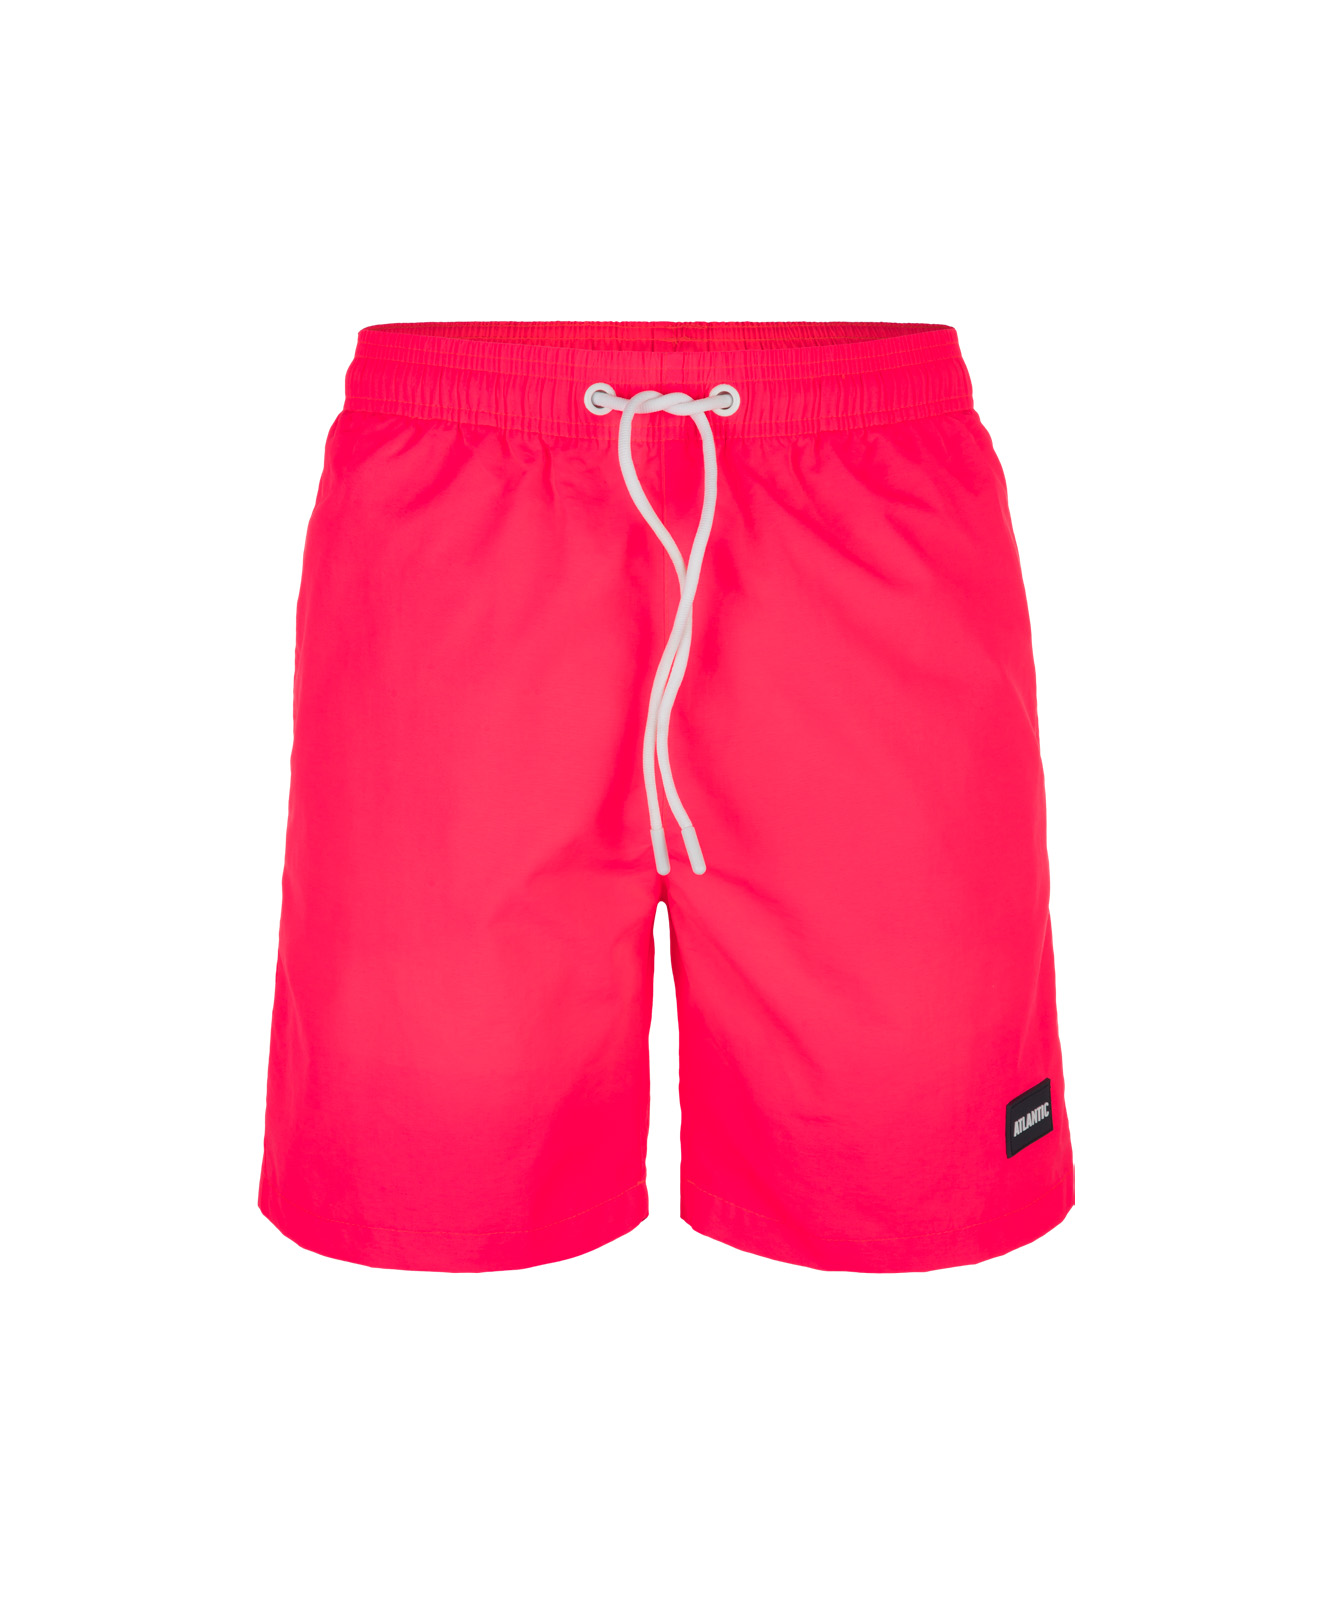 Mens swimming shorts ATLANTIC - coral